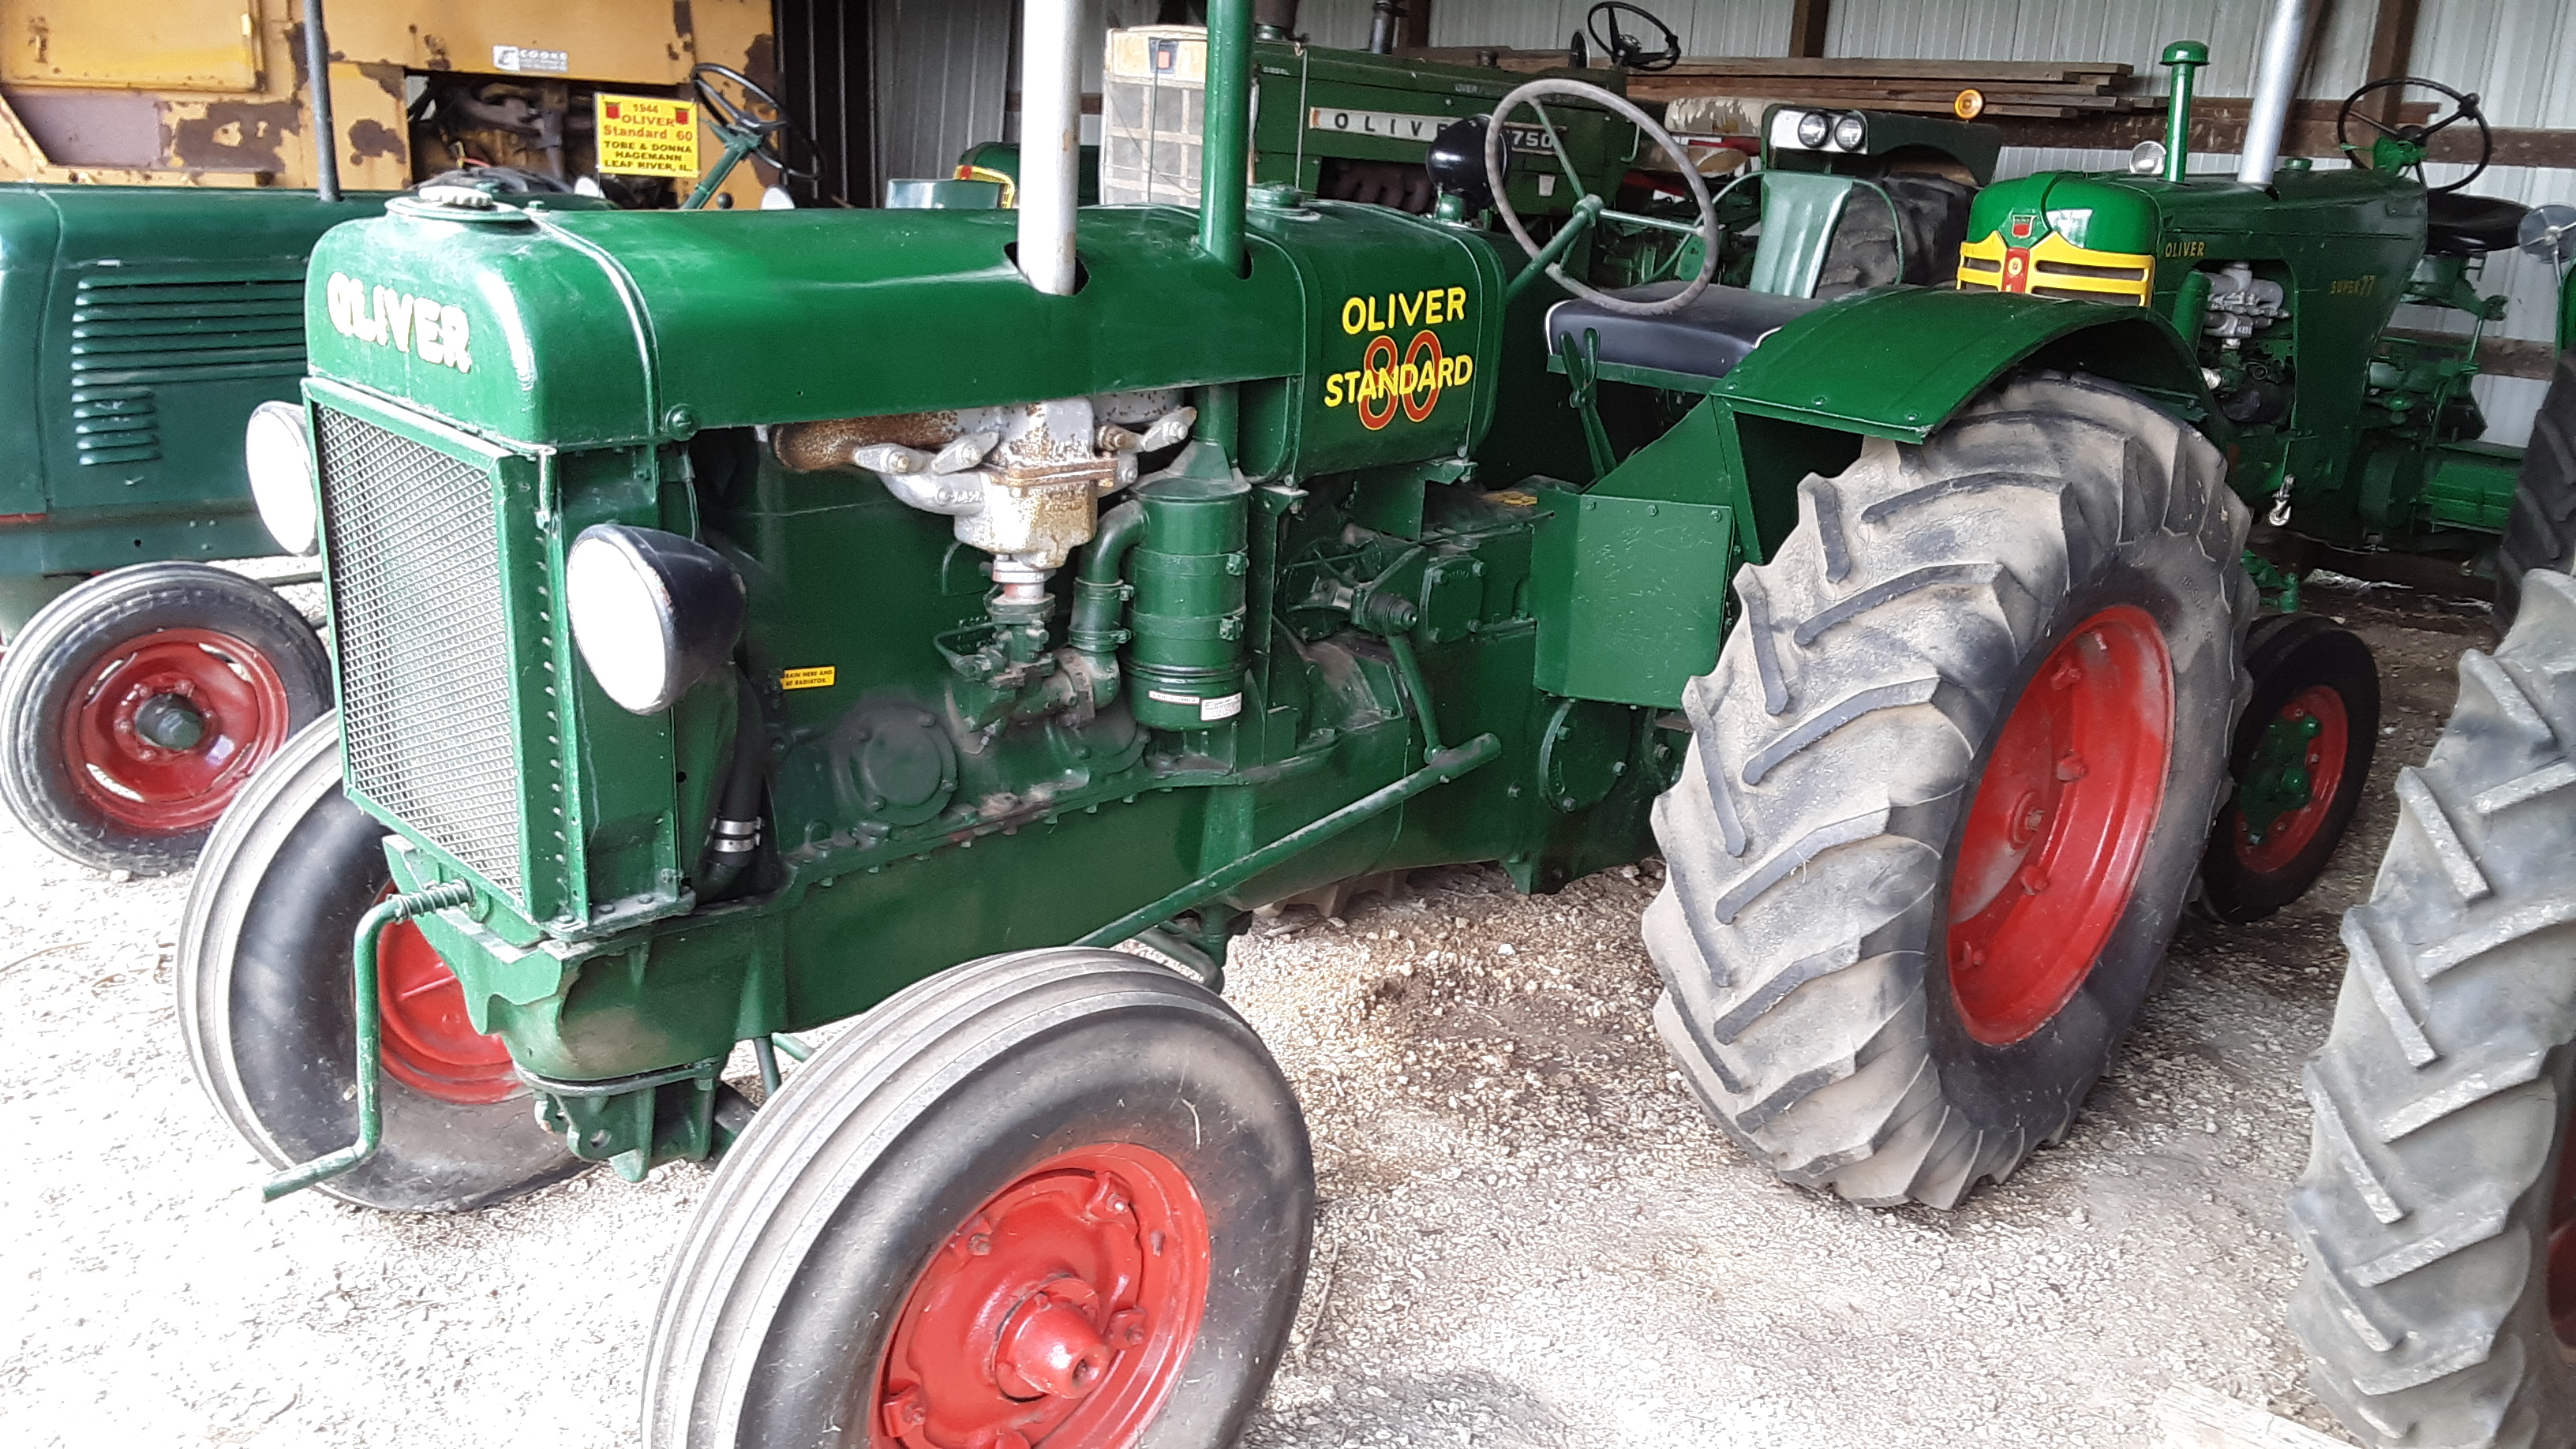 Item: Oliver 80 Standard Tractor